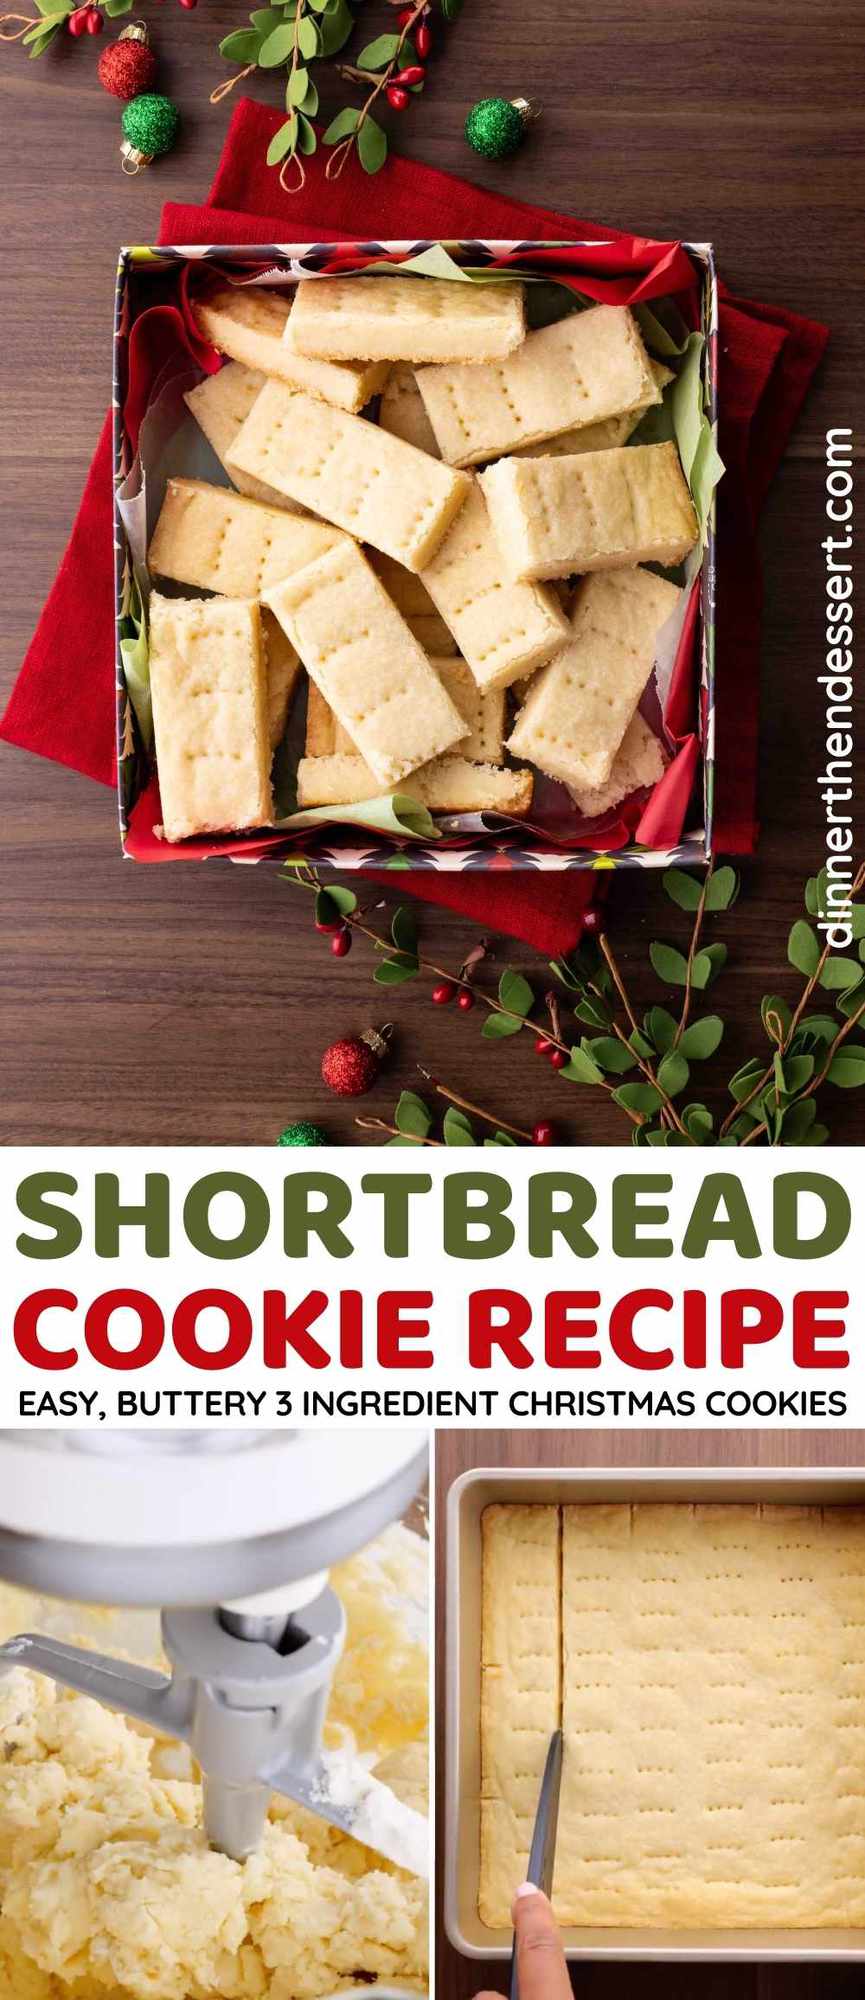 https://dinnerthendessert.com/wp-content/uploads/2020/09/Shortbread-Cookies-L-1.jpg